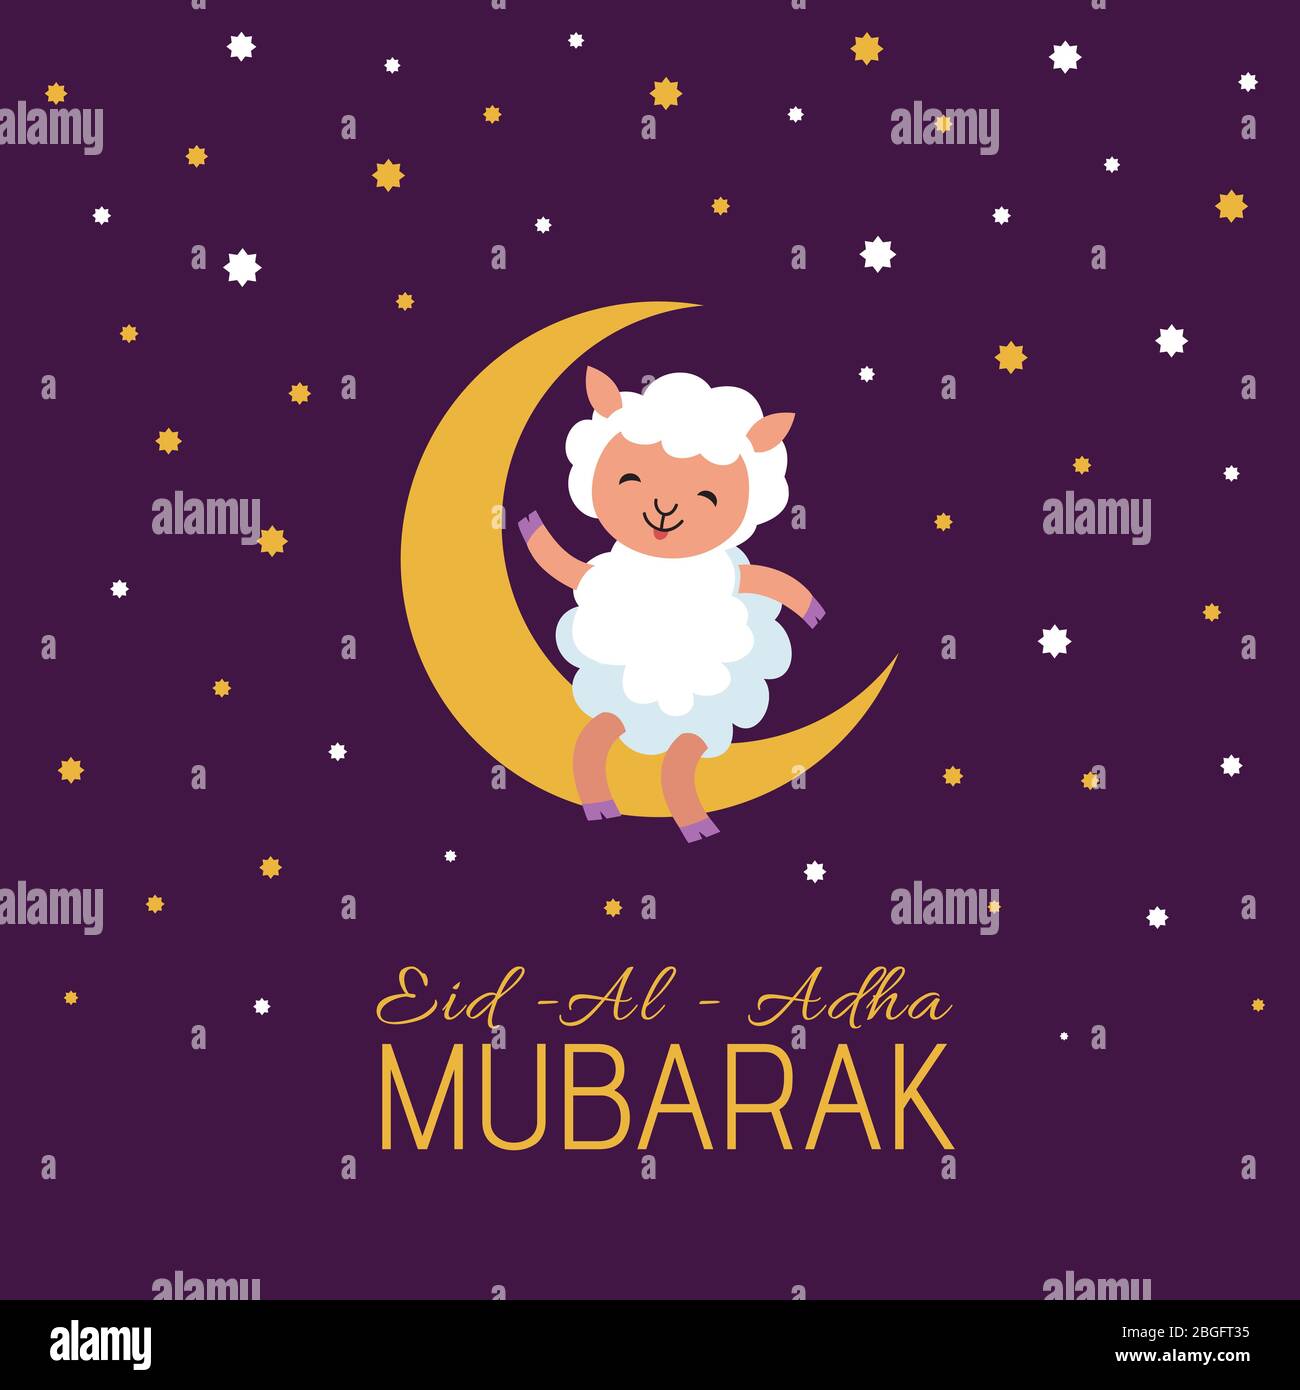 EID mubarak festival arabo poster vettoriale con simpatico cartoon pecora. Bandiera religiosa araba, celebrazione eid-al-adha, illustrazione di mubarak Illustrazione Vettoriale